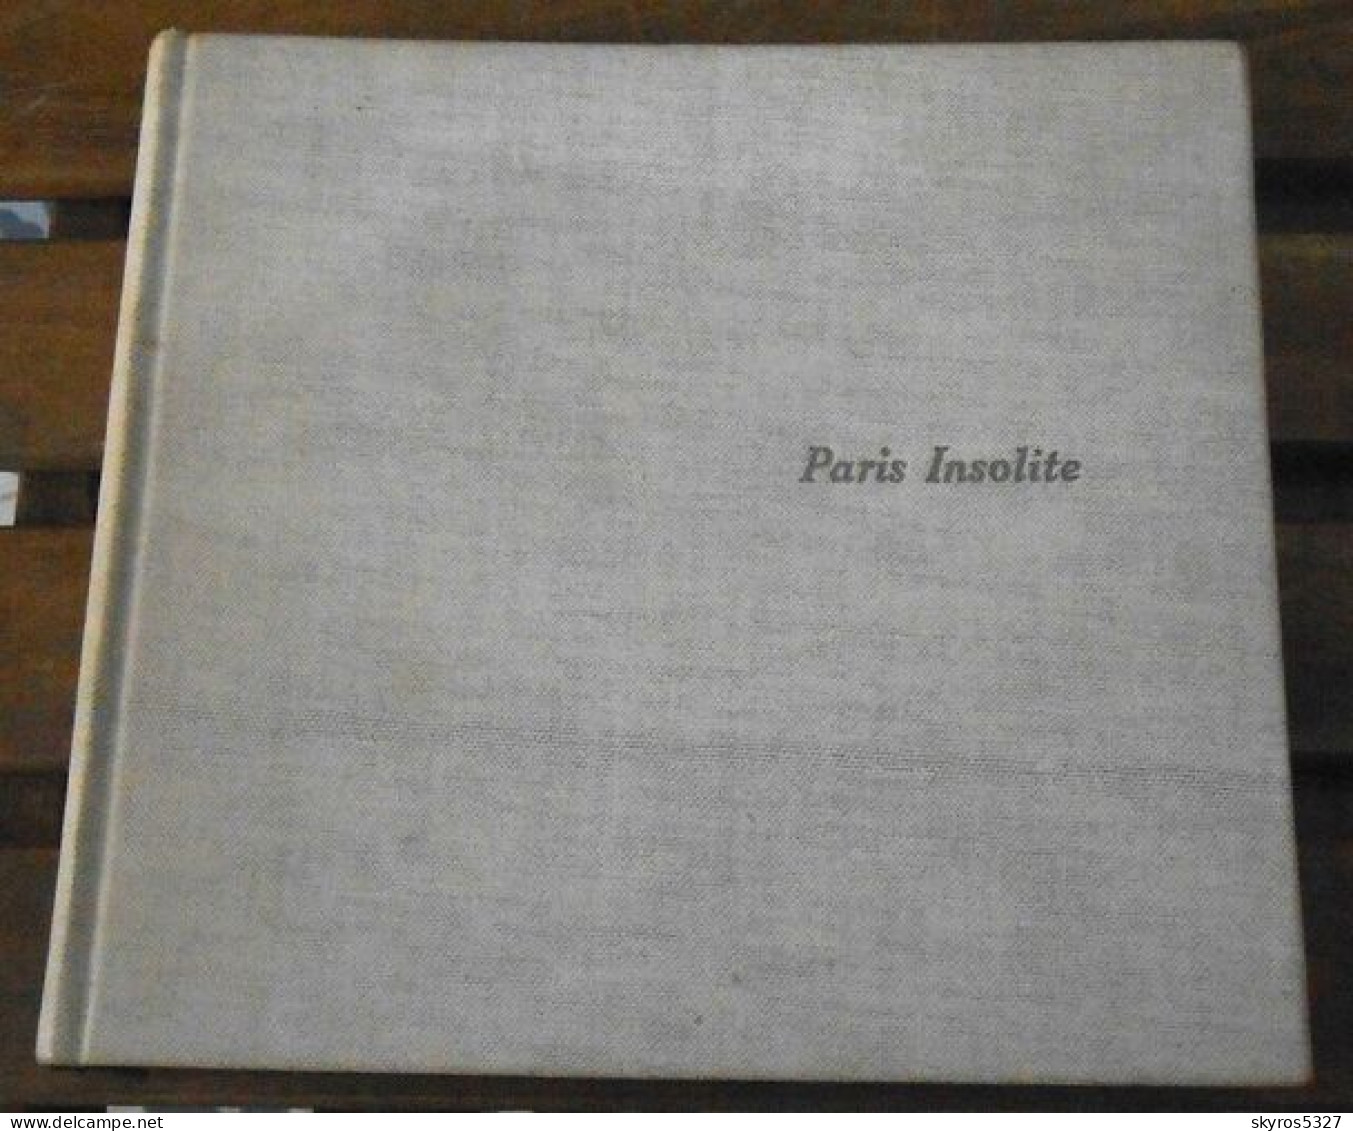 Paris Insolite - Paris